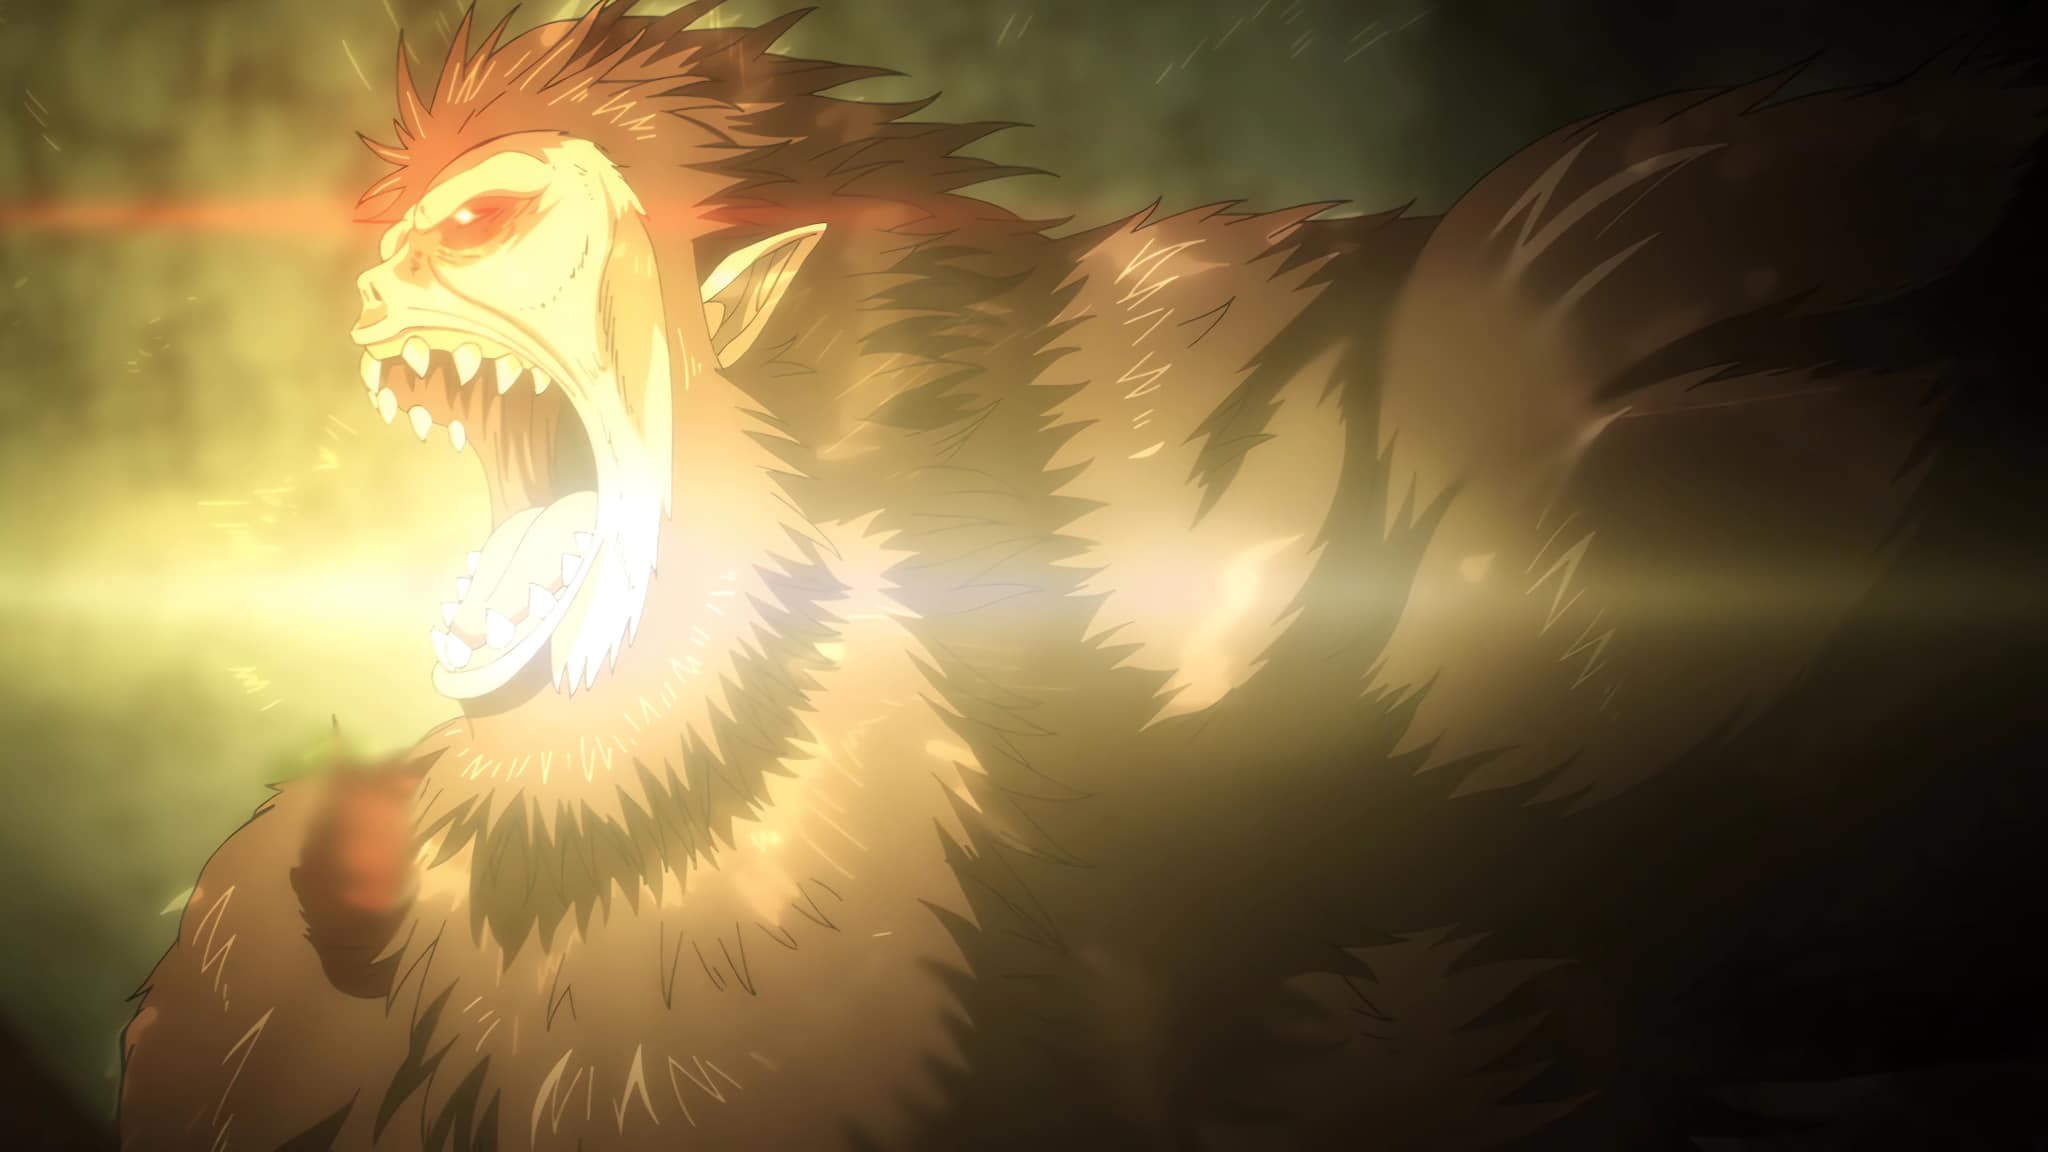 Sieg Jaeger utilise son cri à Shiganshina dans la saison finale de L'Attaque des Titans